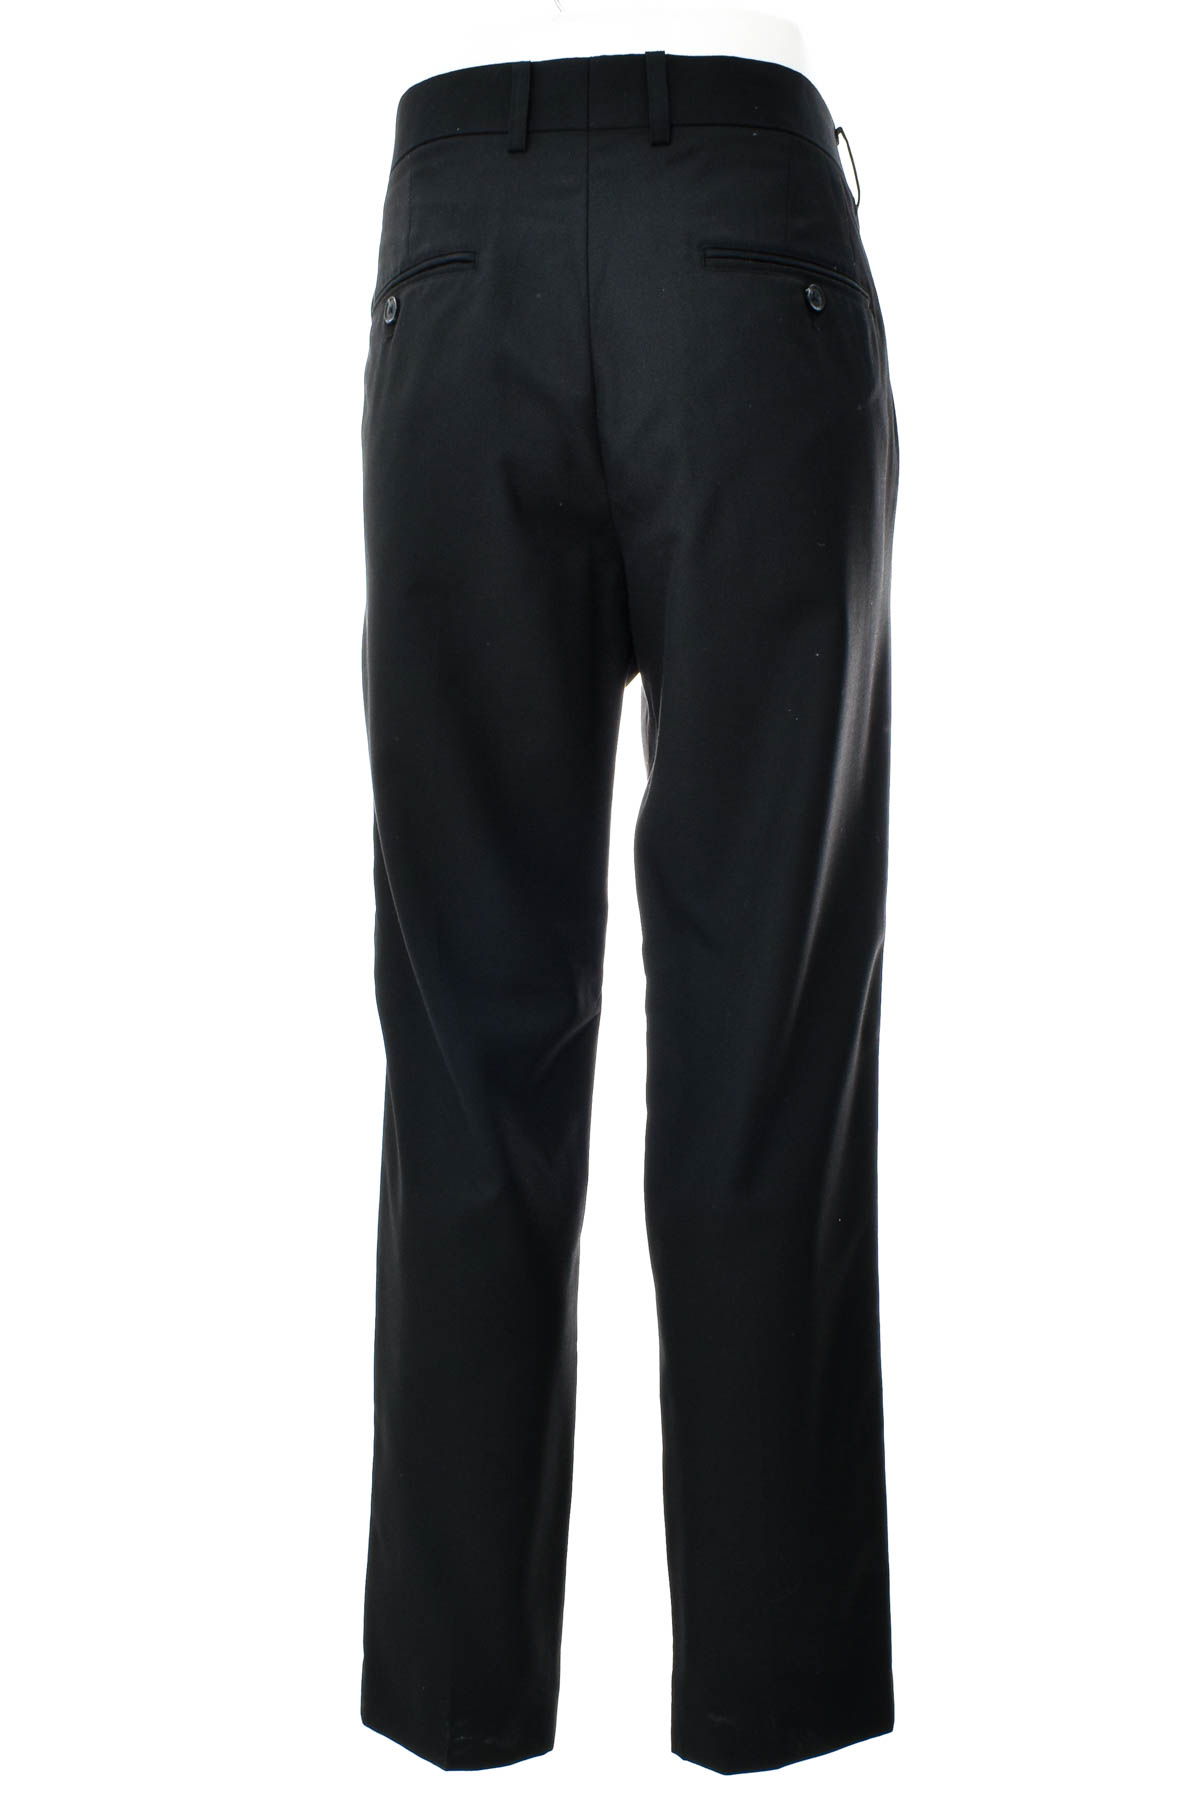 Pantalon pentru bărbați - CONNOR - 1